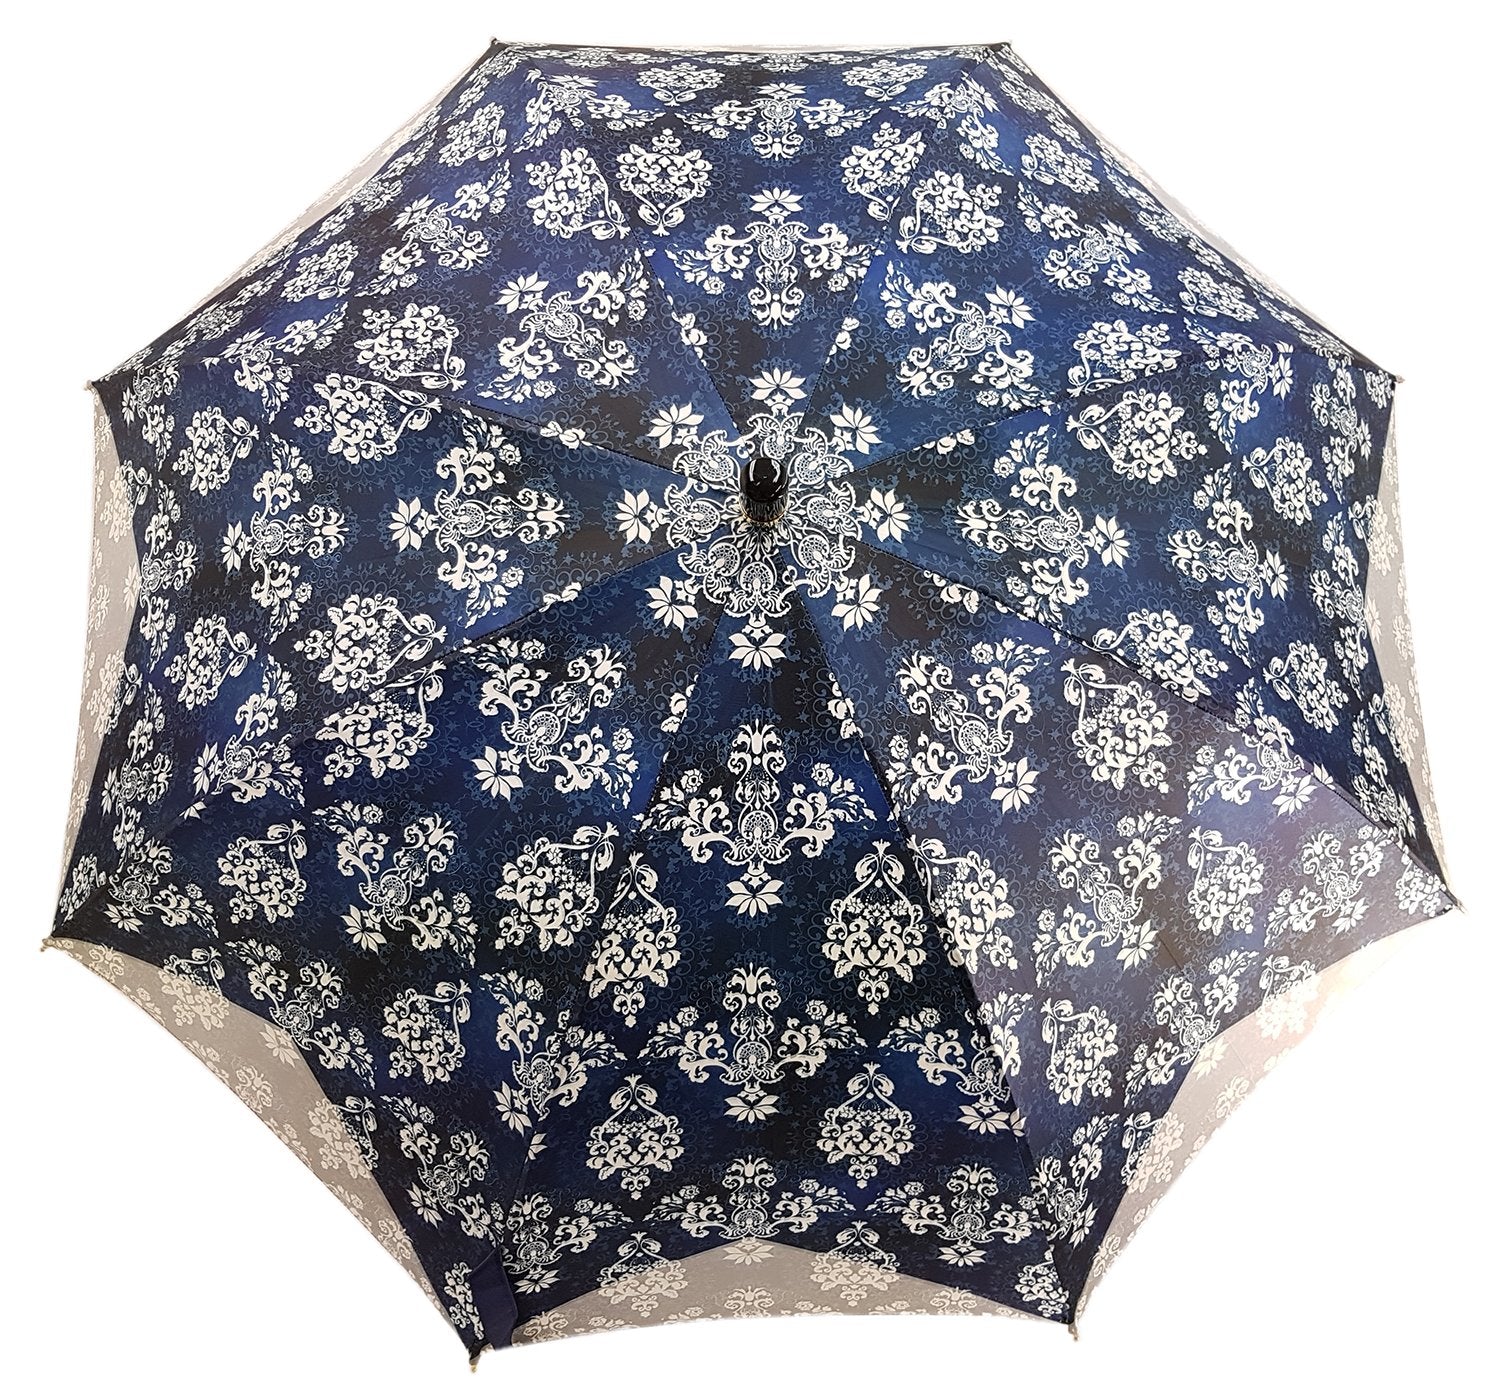 New Blue Woman's Umbrella Exclusive Design - il-marchesato